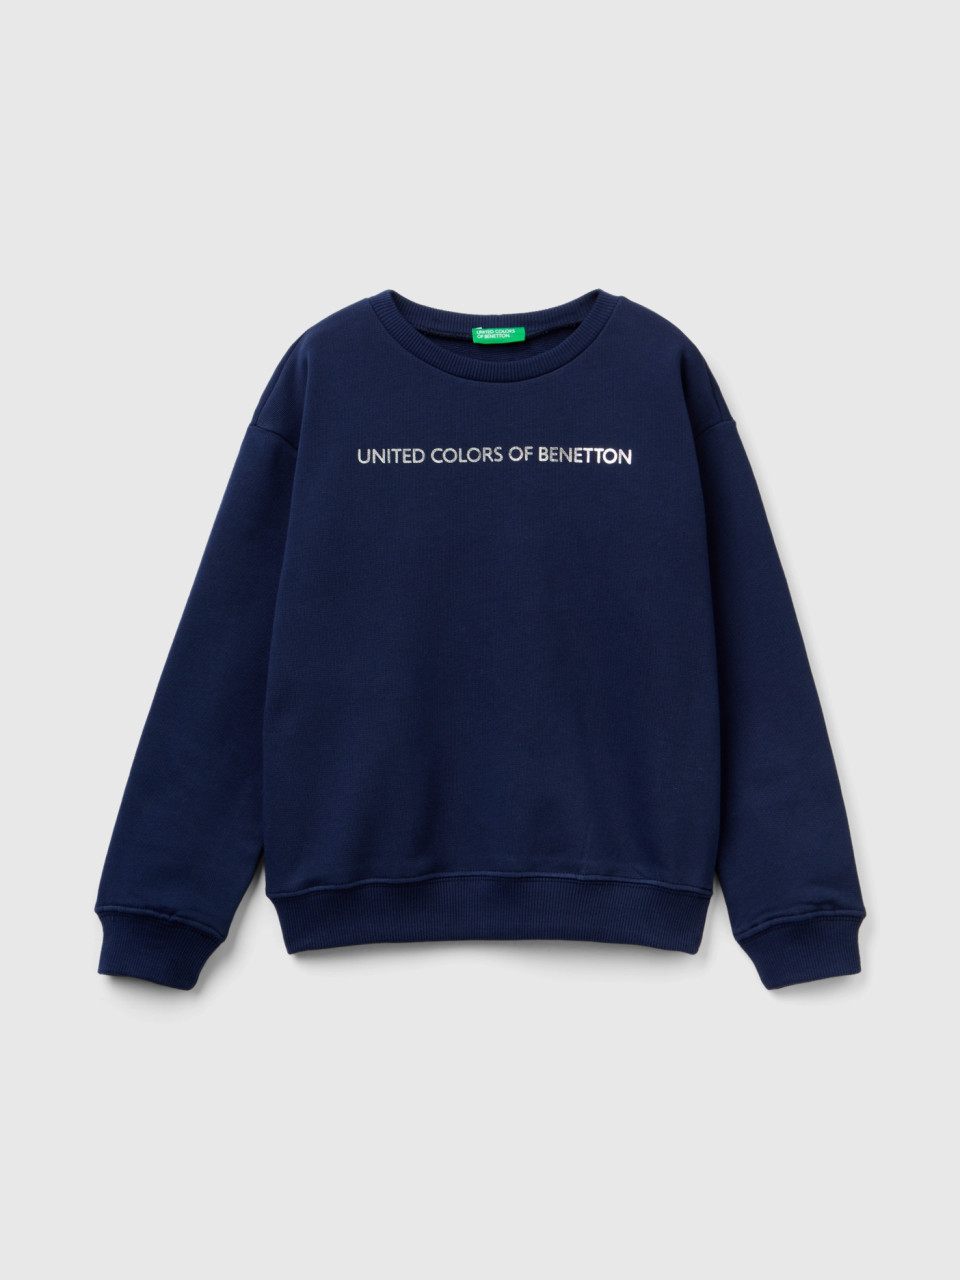 Benetton, 100% Cotton Sweatshirt With Logo, Dark Blue, Kids